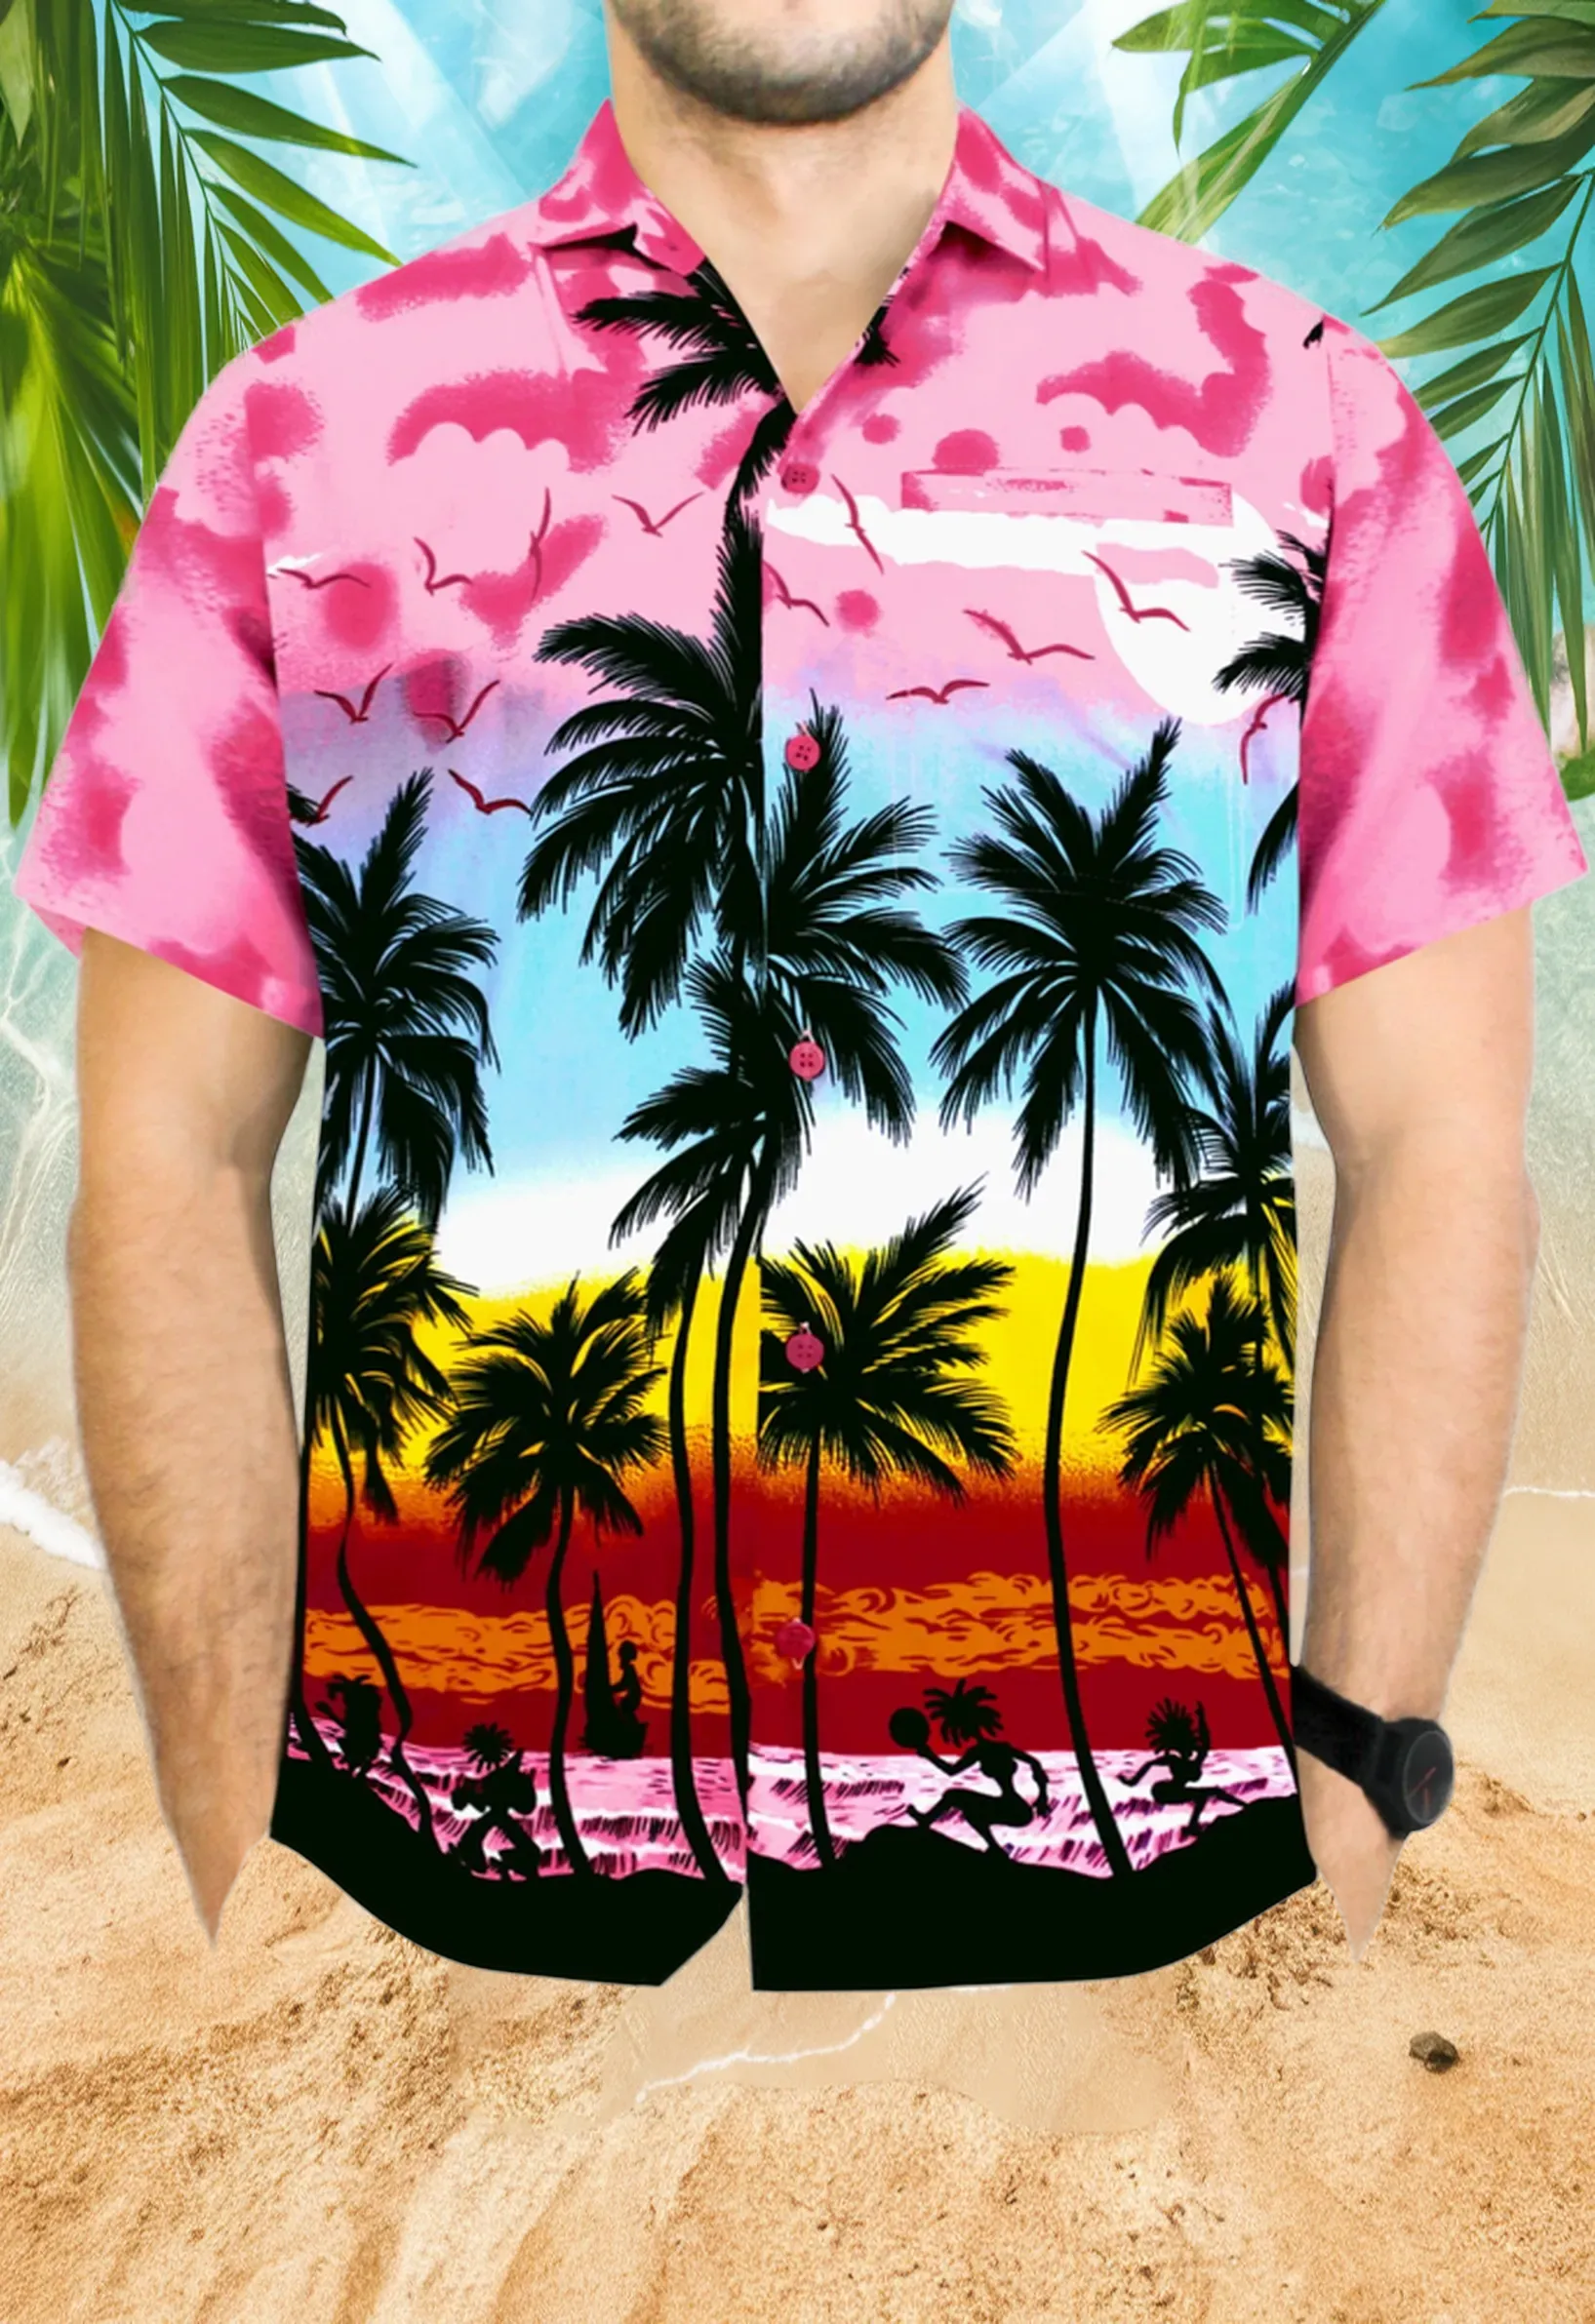 Pink Hawaiian Shirt